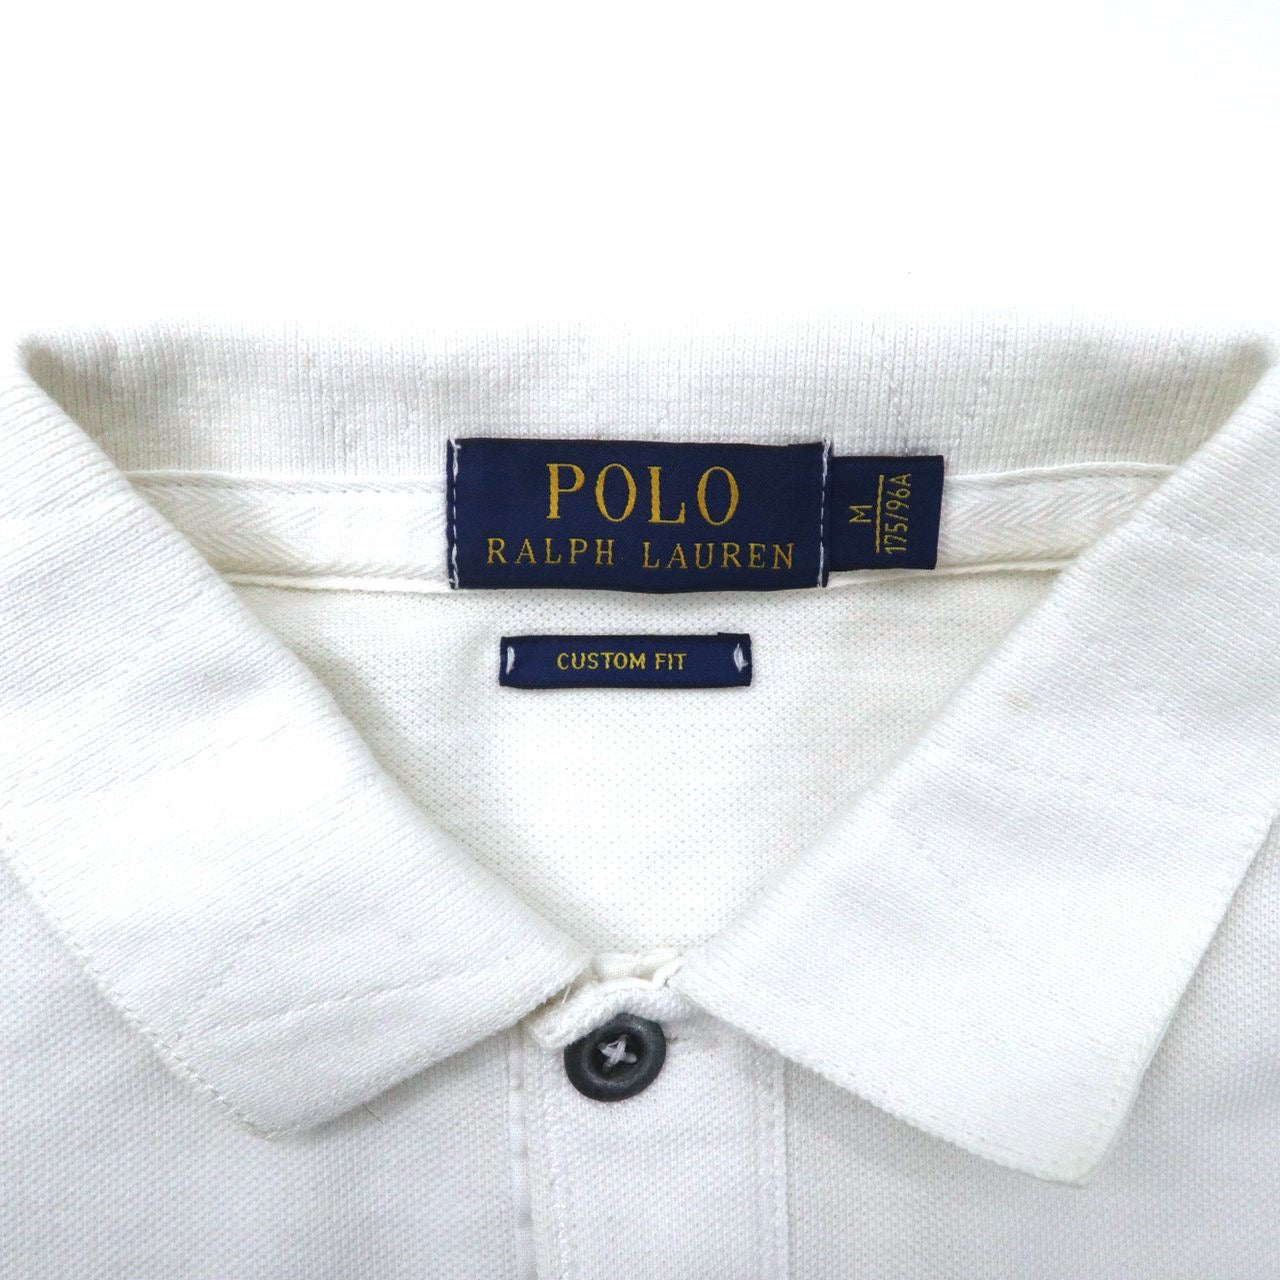 POLO RALPH LAUREN ポロシャツ M ホワイト ボーダー コットン ビッグポニー刺繍 YACHT CLUB